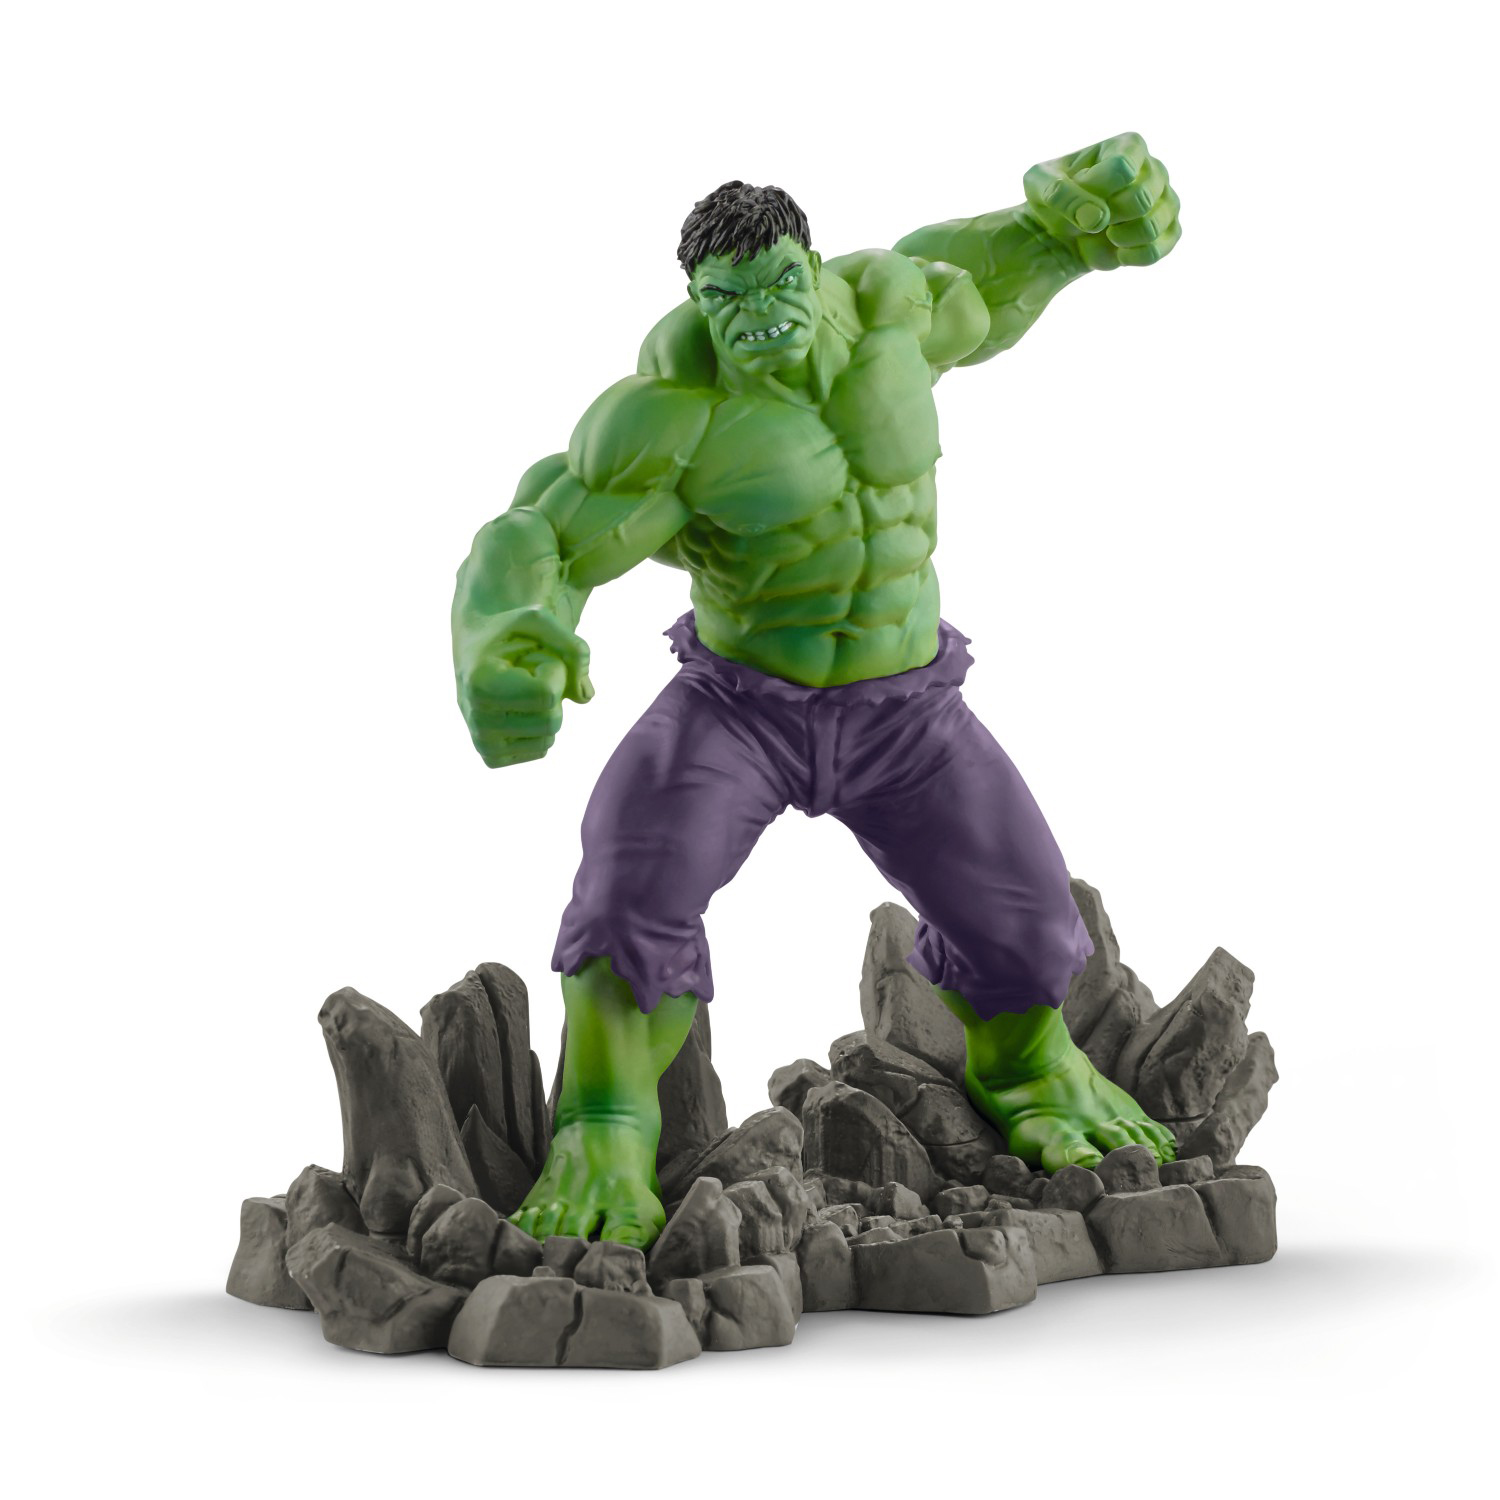 Hulk – Toy